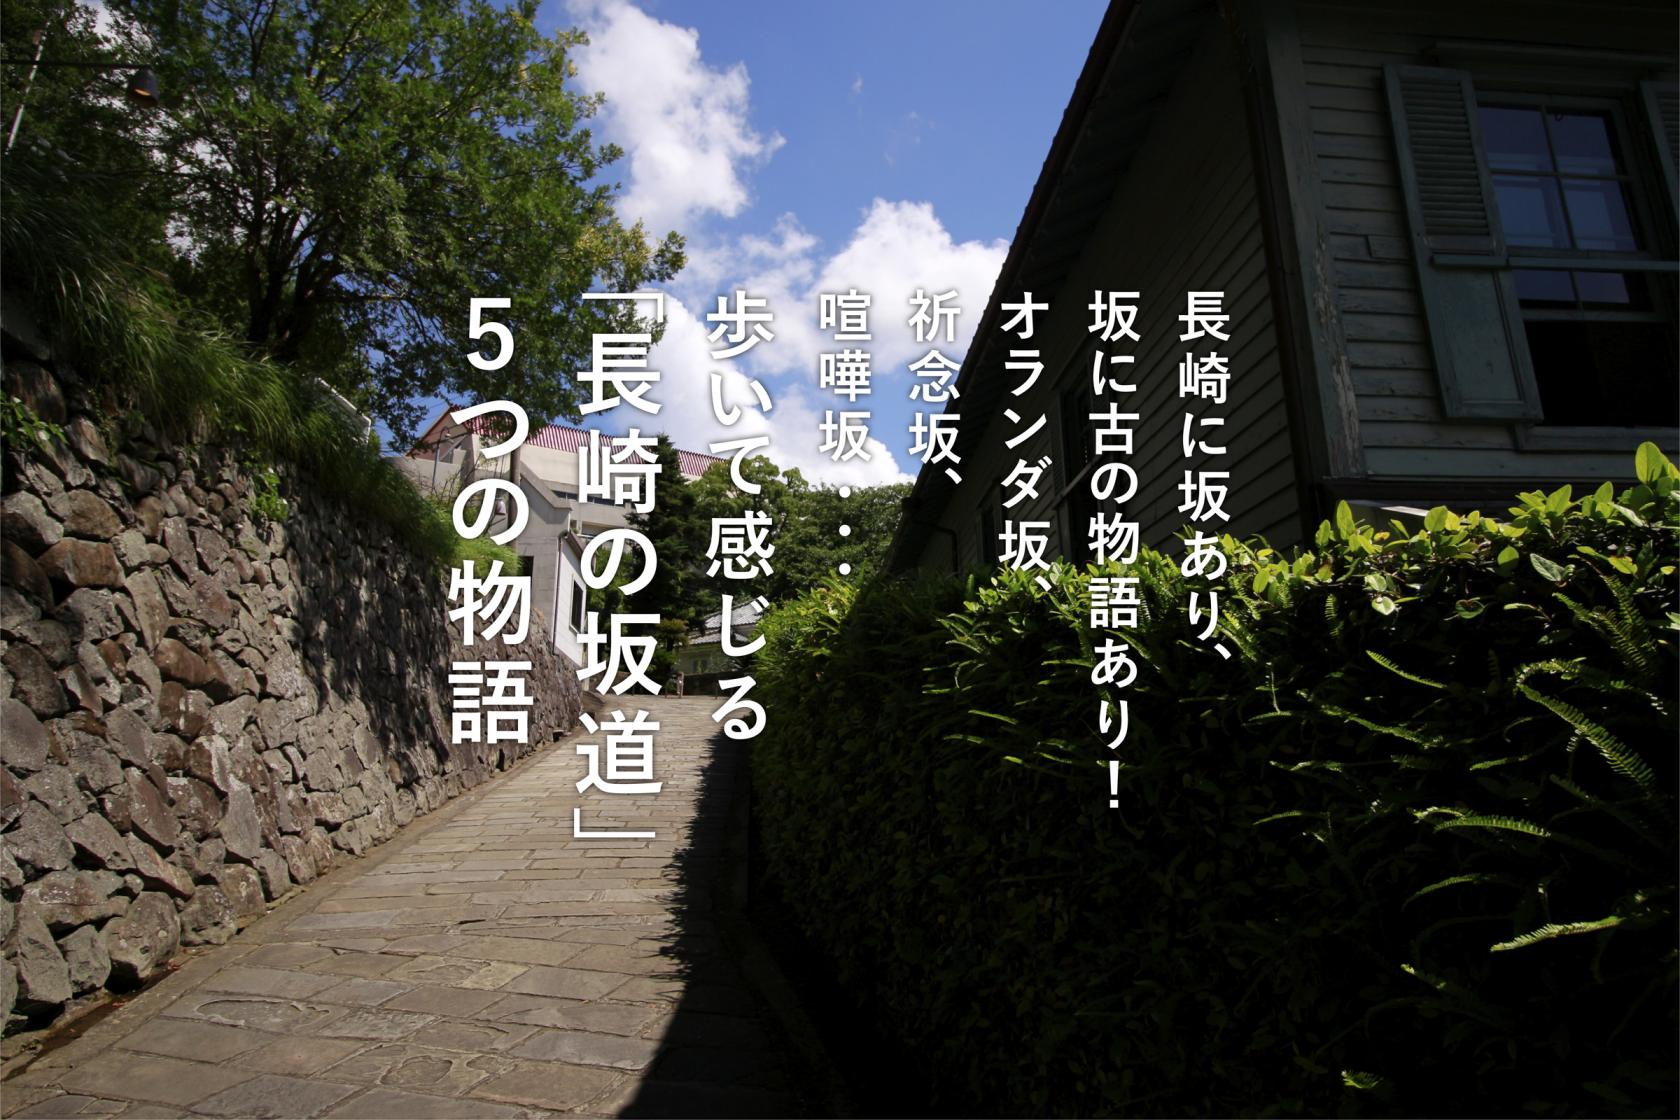 歩いて感じる「長崎の坂道、5つの物語」-1